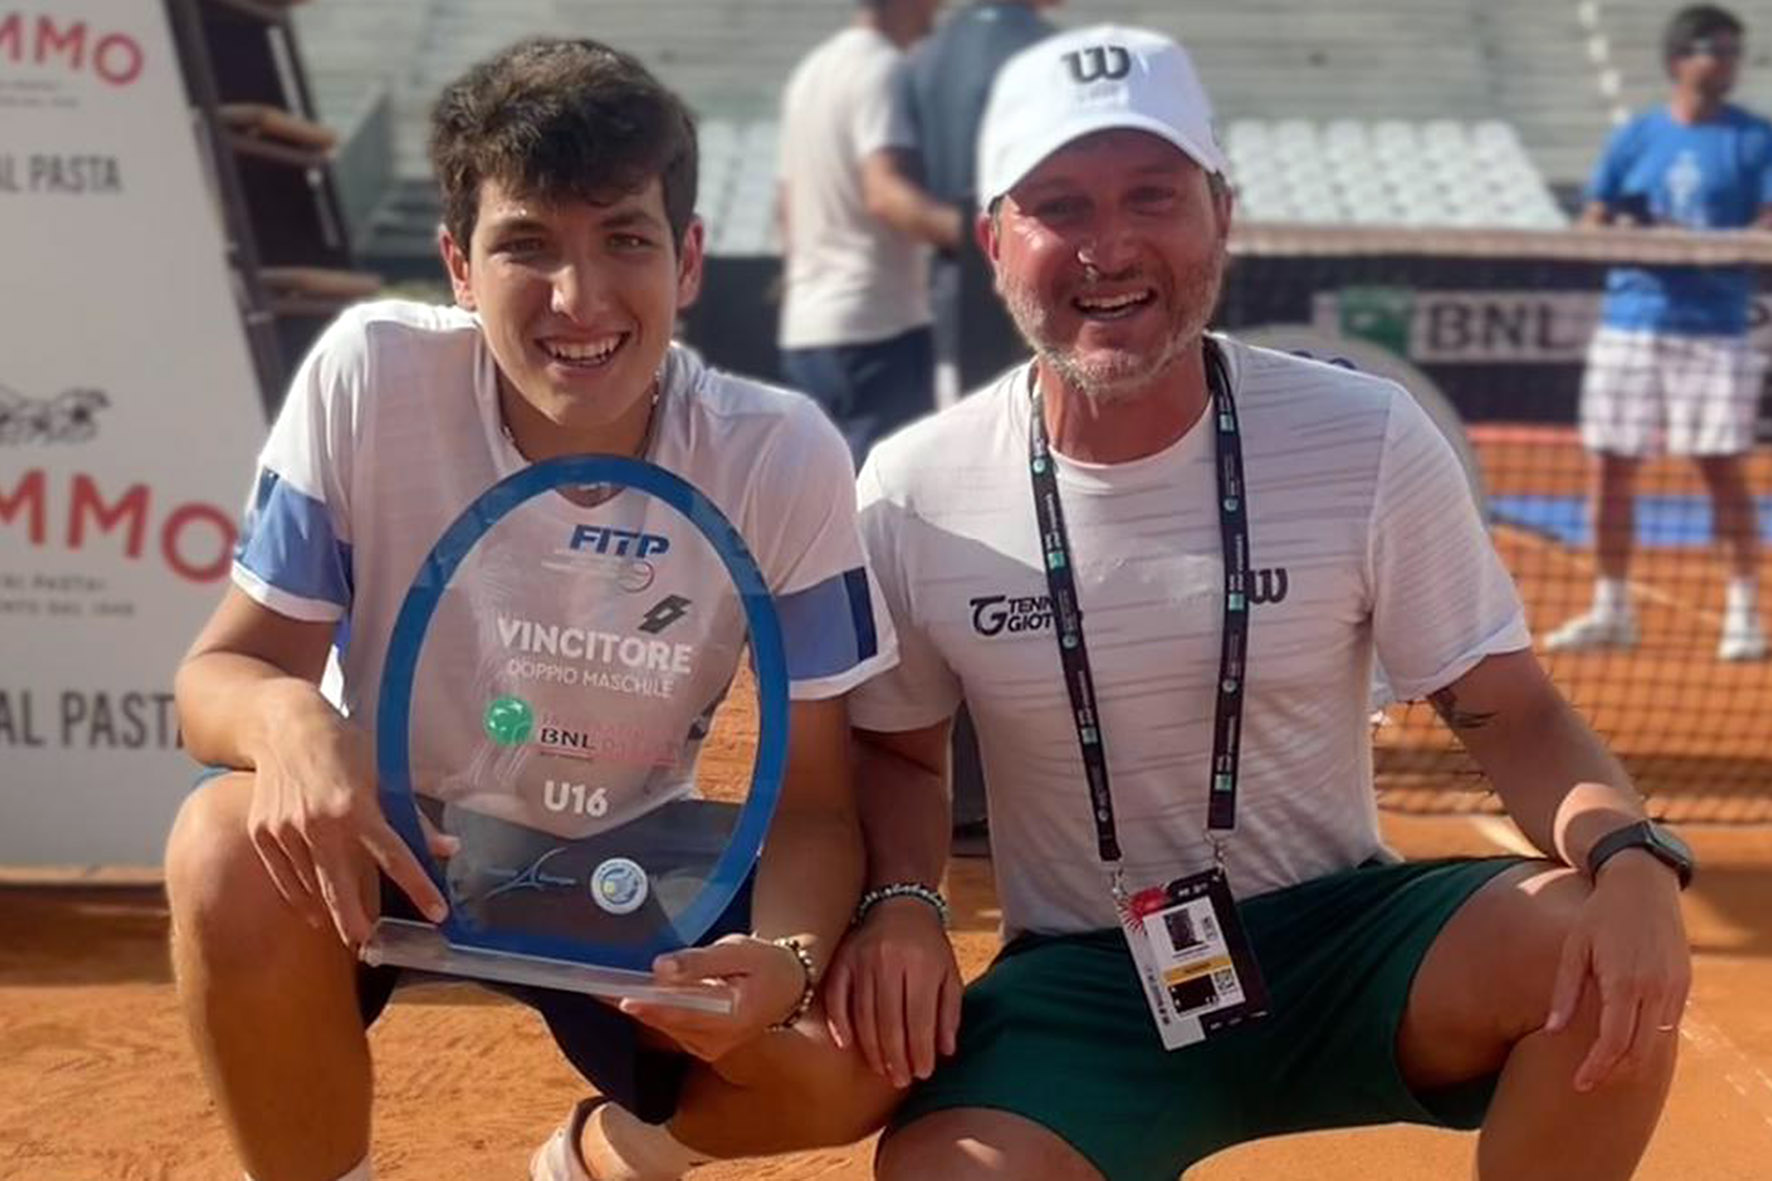 Raffaele Ciurnelli del Tennis Giotto trionfa agli Internazionali d’Italia Under16